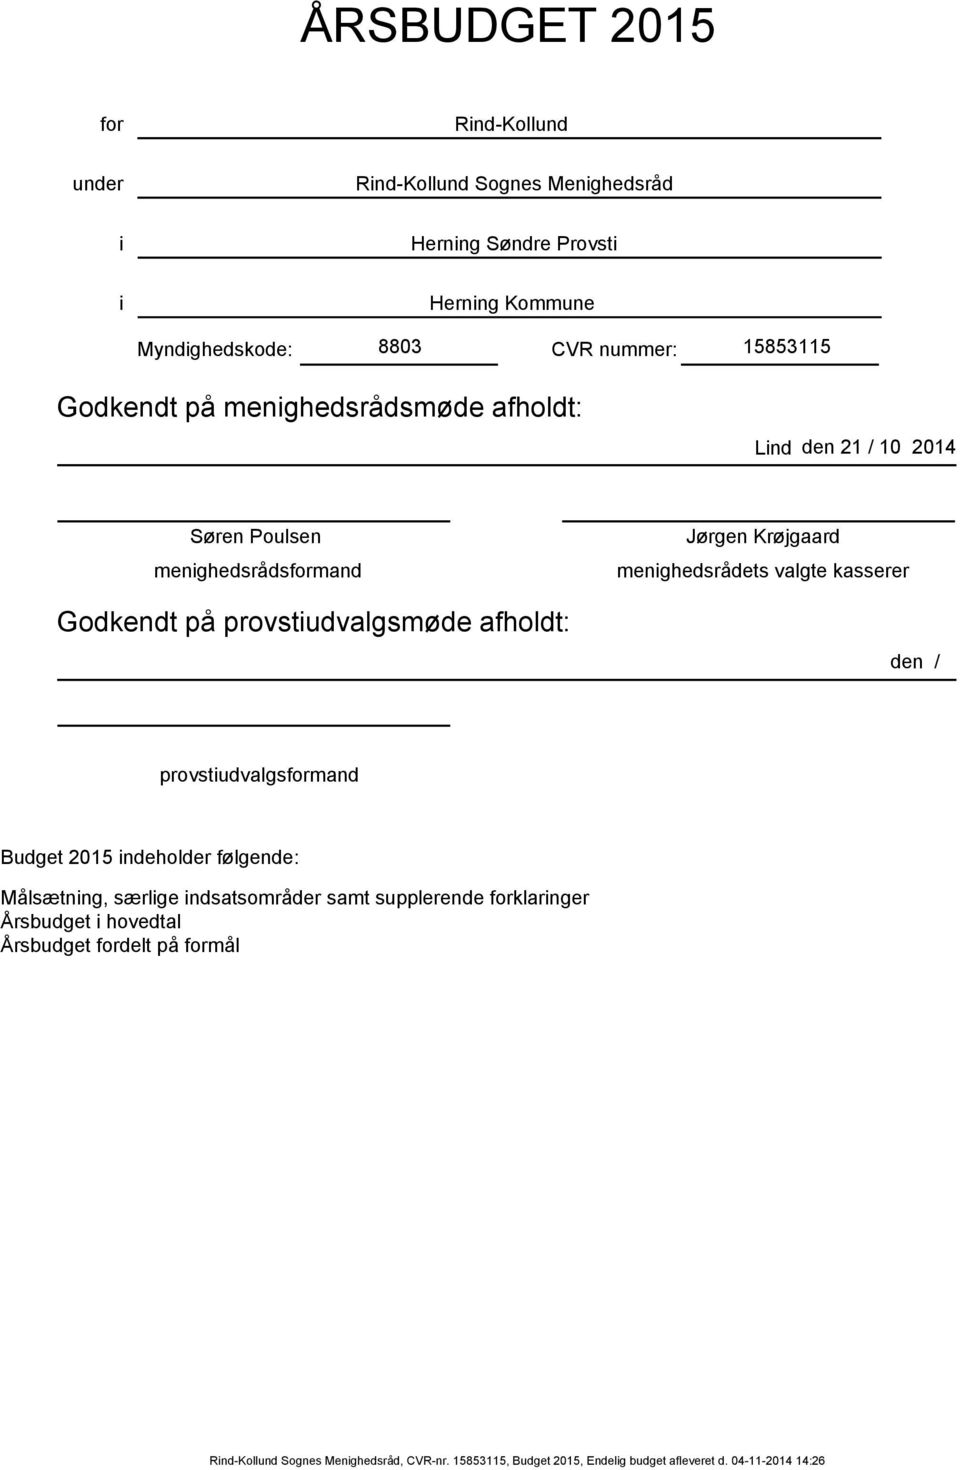 Krøjgaard menighedsrådets valgte kasserer den / provstiudvalgsformand 1 indeholder følgende: Målsætning, særlige indsatsområder samt supplerende